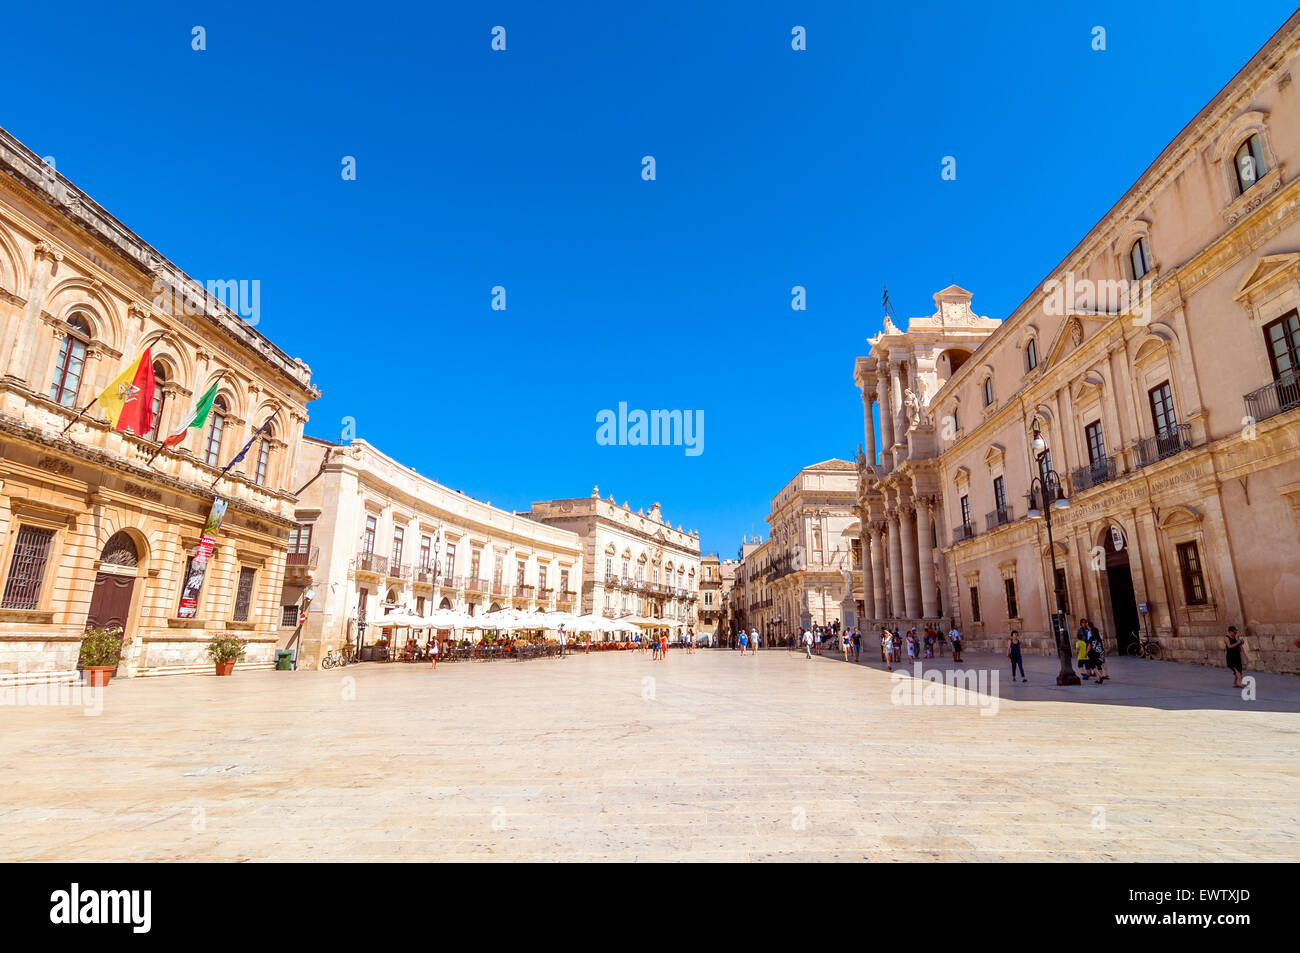 Siracusa, Italia - Agosto 16, 2014: los turistas y lugareños visitar la plaza principal Piazza del Duomo en Ortigia, Siracusa, Italia. Foto de stock